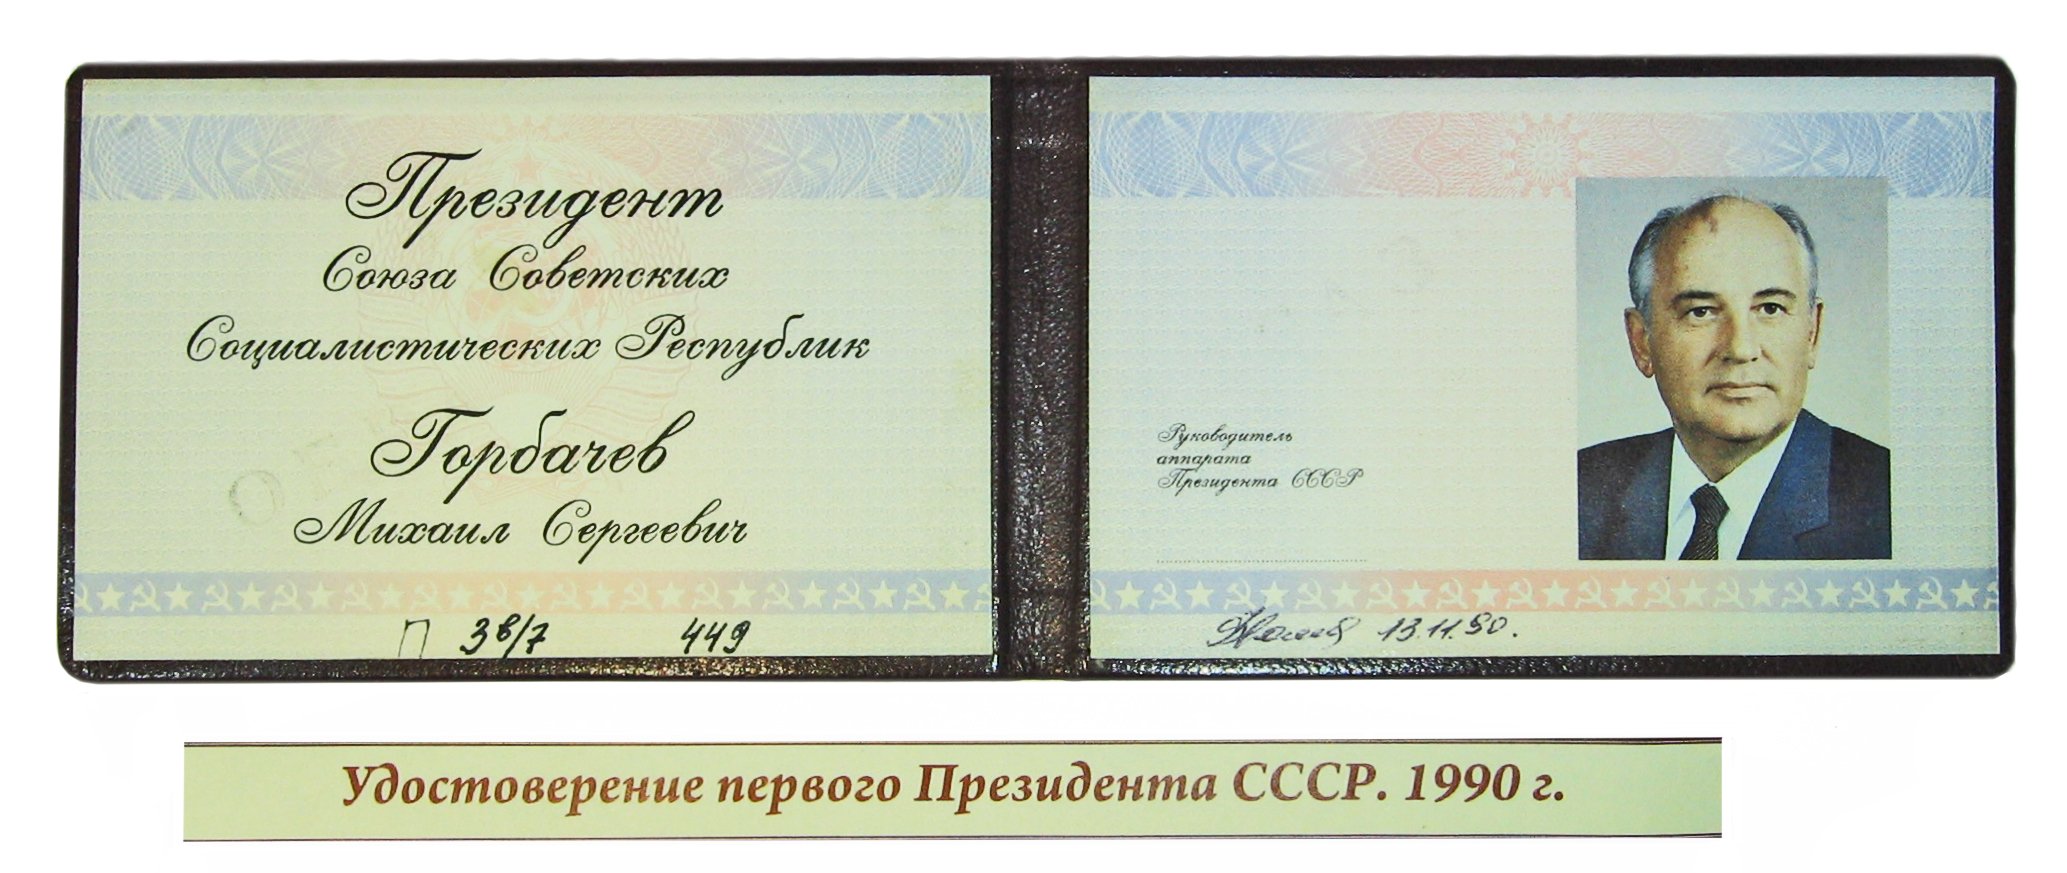 Удостоверение президента СССР